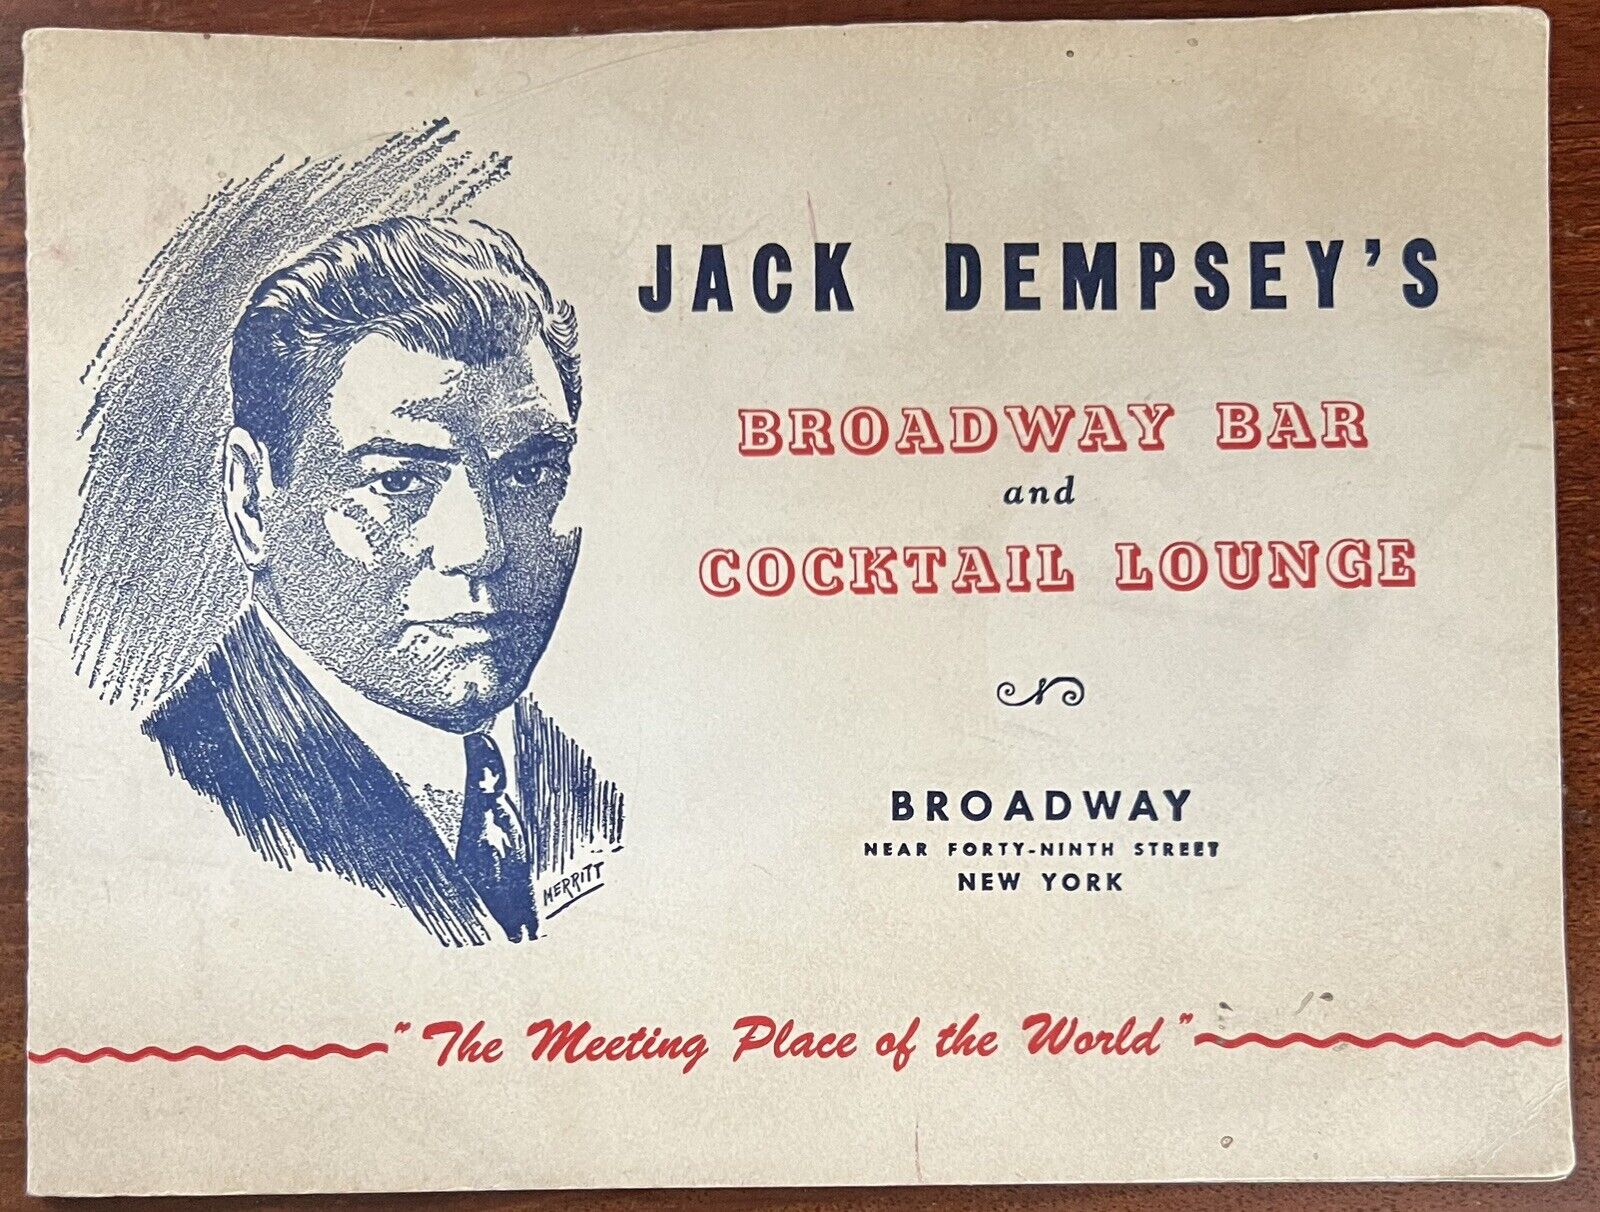 VTG 1949 Souvenir Photo Jack Dempsey’s Broadway Bar Cocktail Lounge Pretty Women